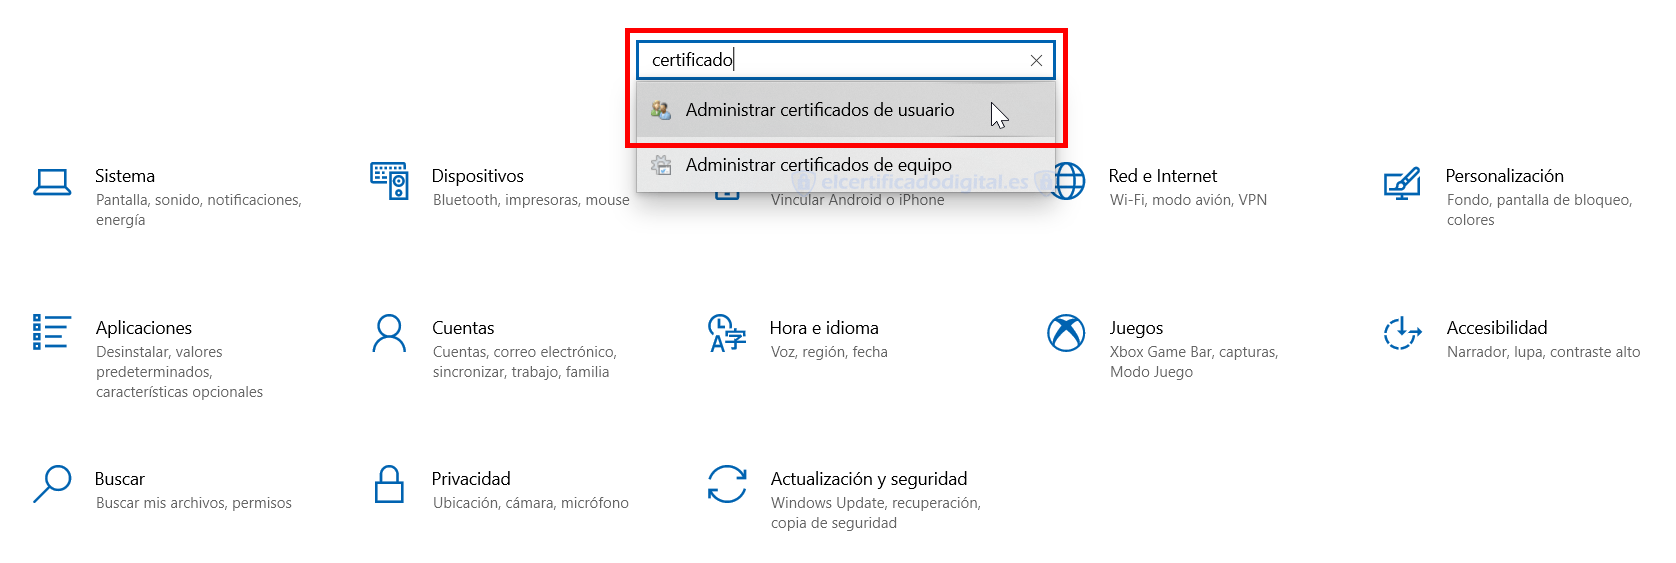 Acceder al Administrador de Certificados de Windows